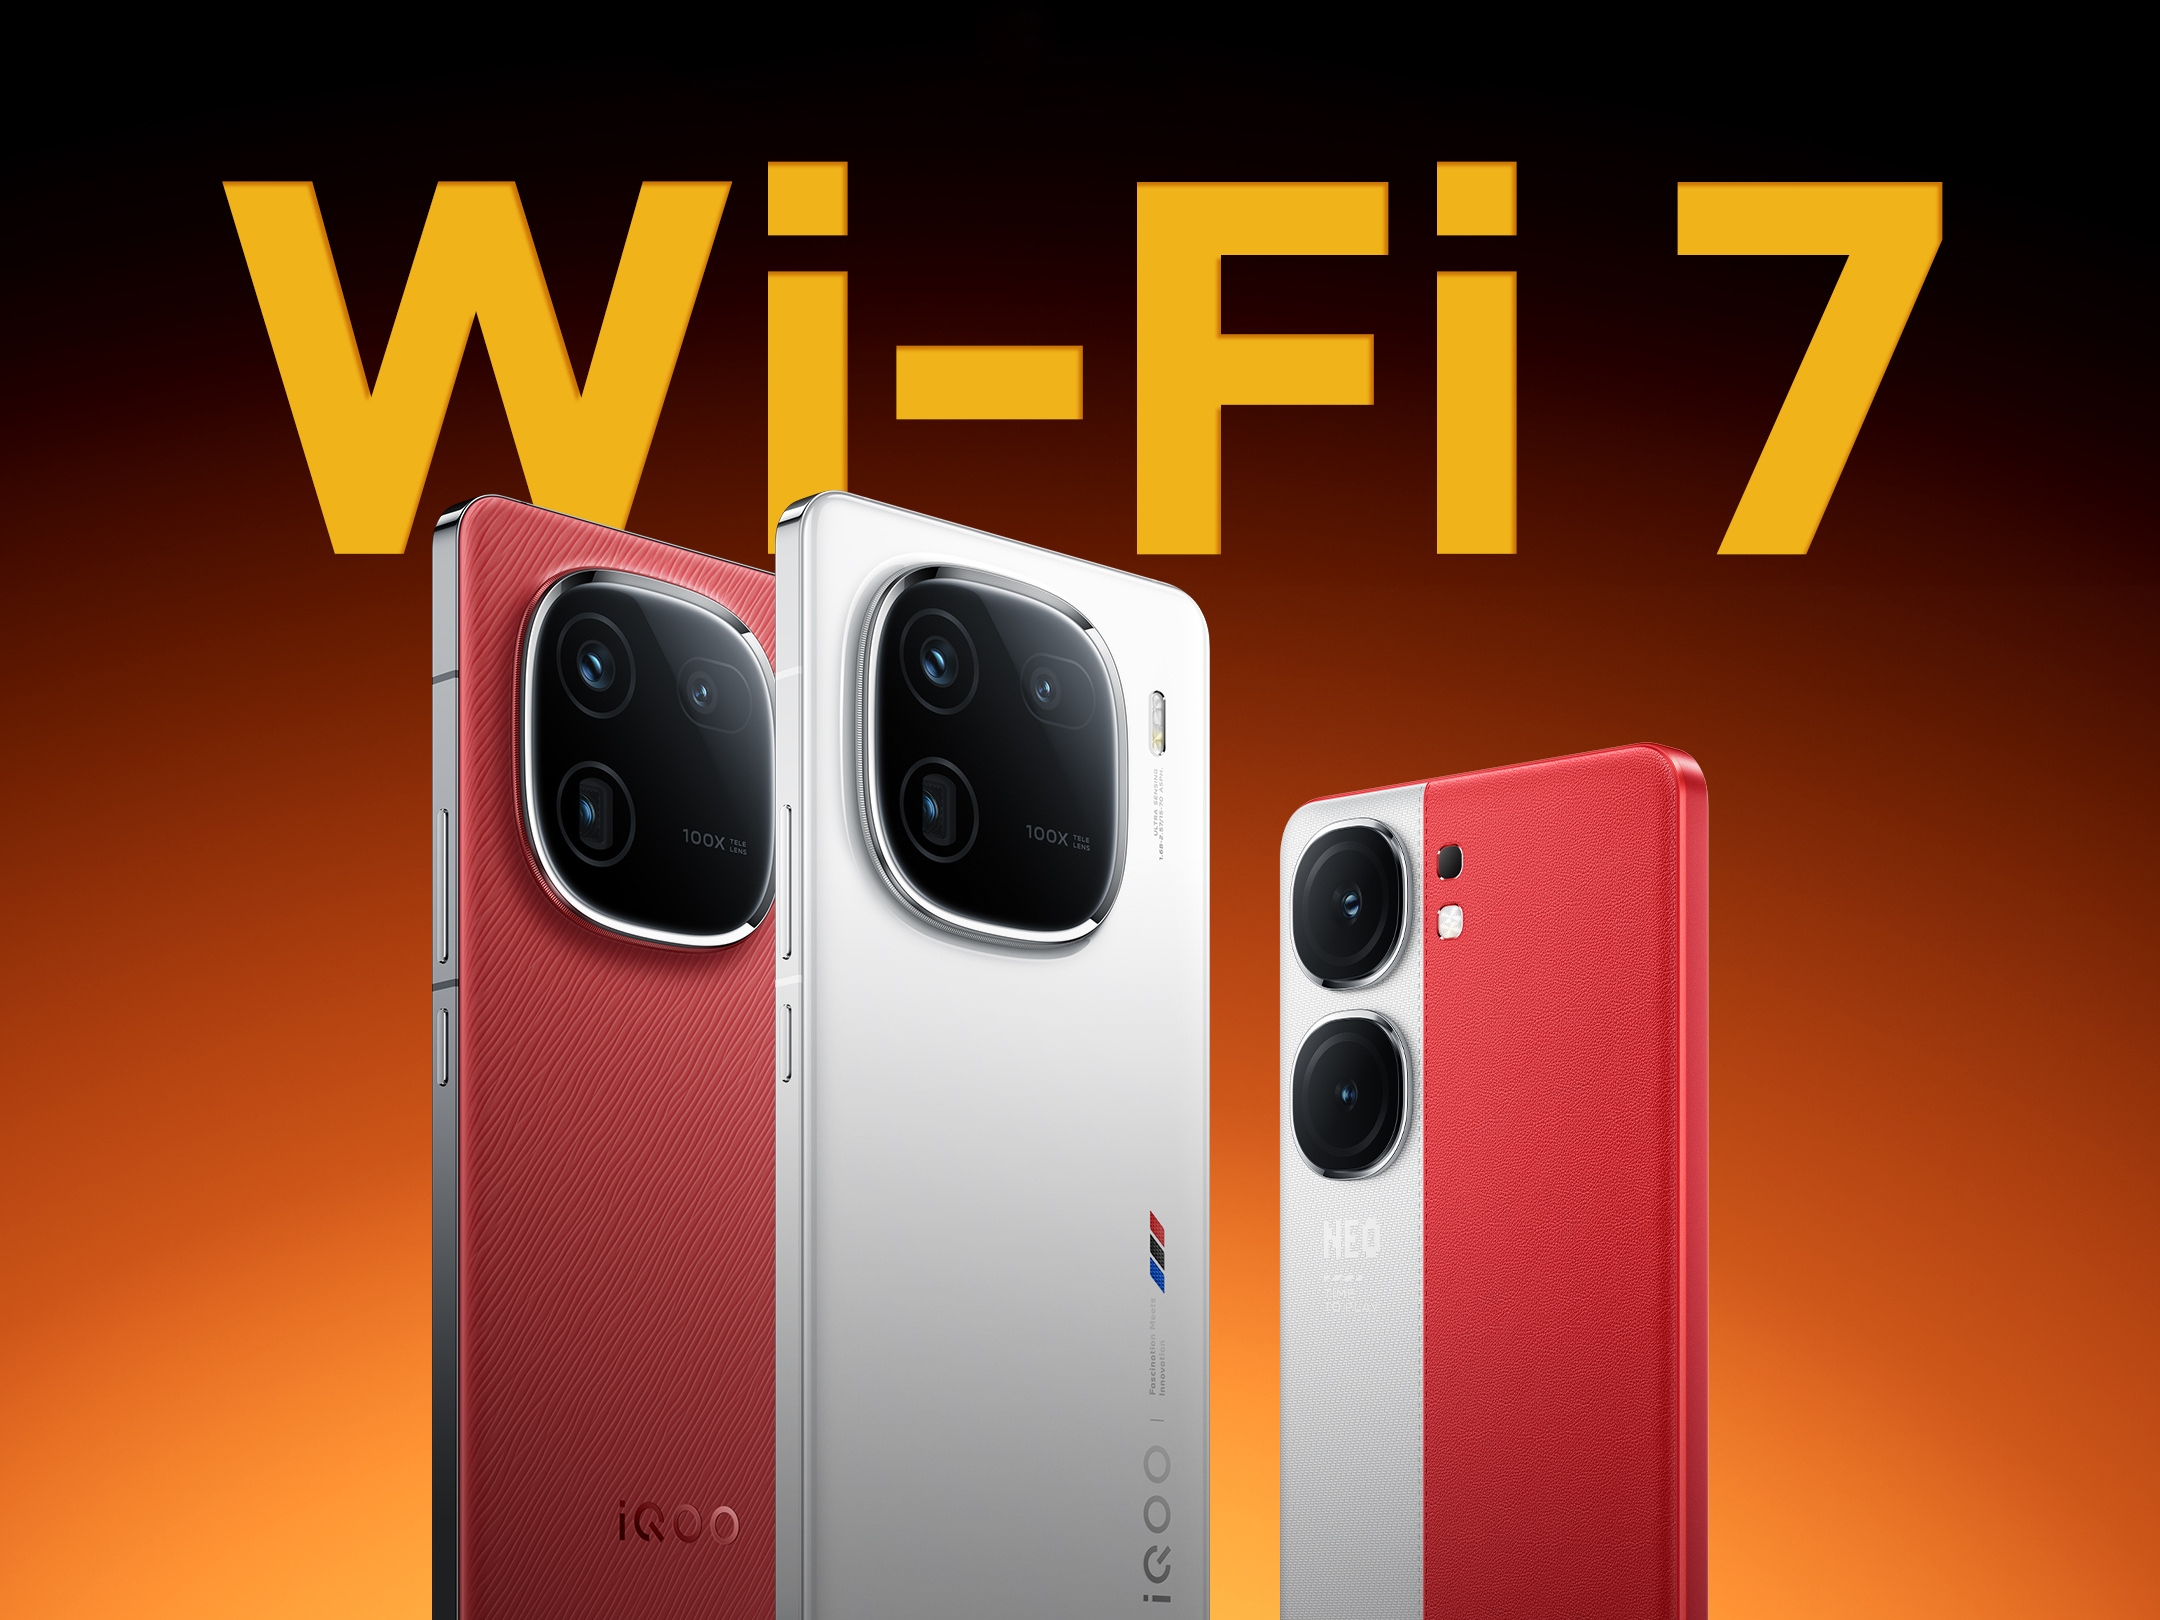 Les smartphones des séries iQOO 12 et iQOO Neo 9 sont désormais compatibles avec le Wi-Fi 7 grâce à une mise à jour logicielle.